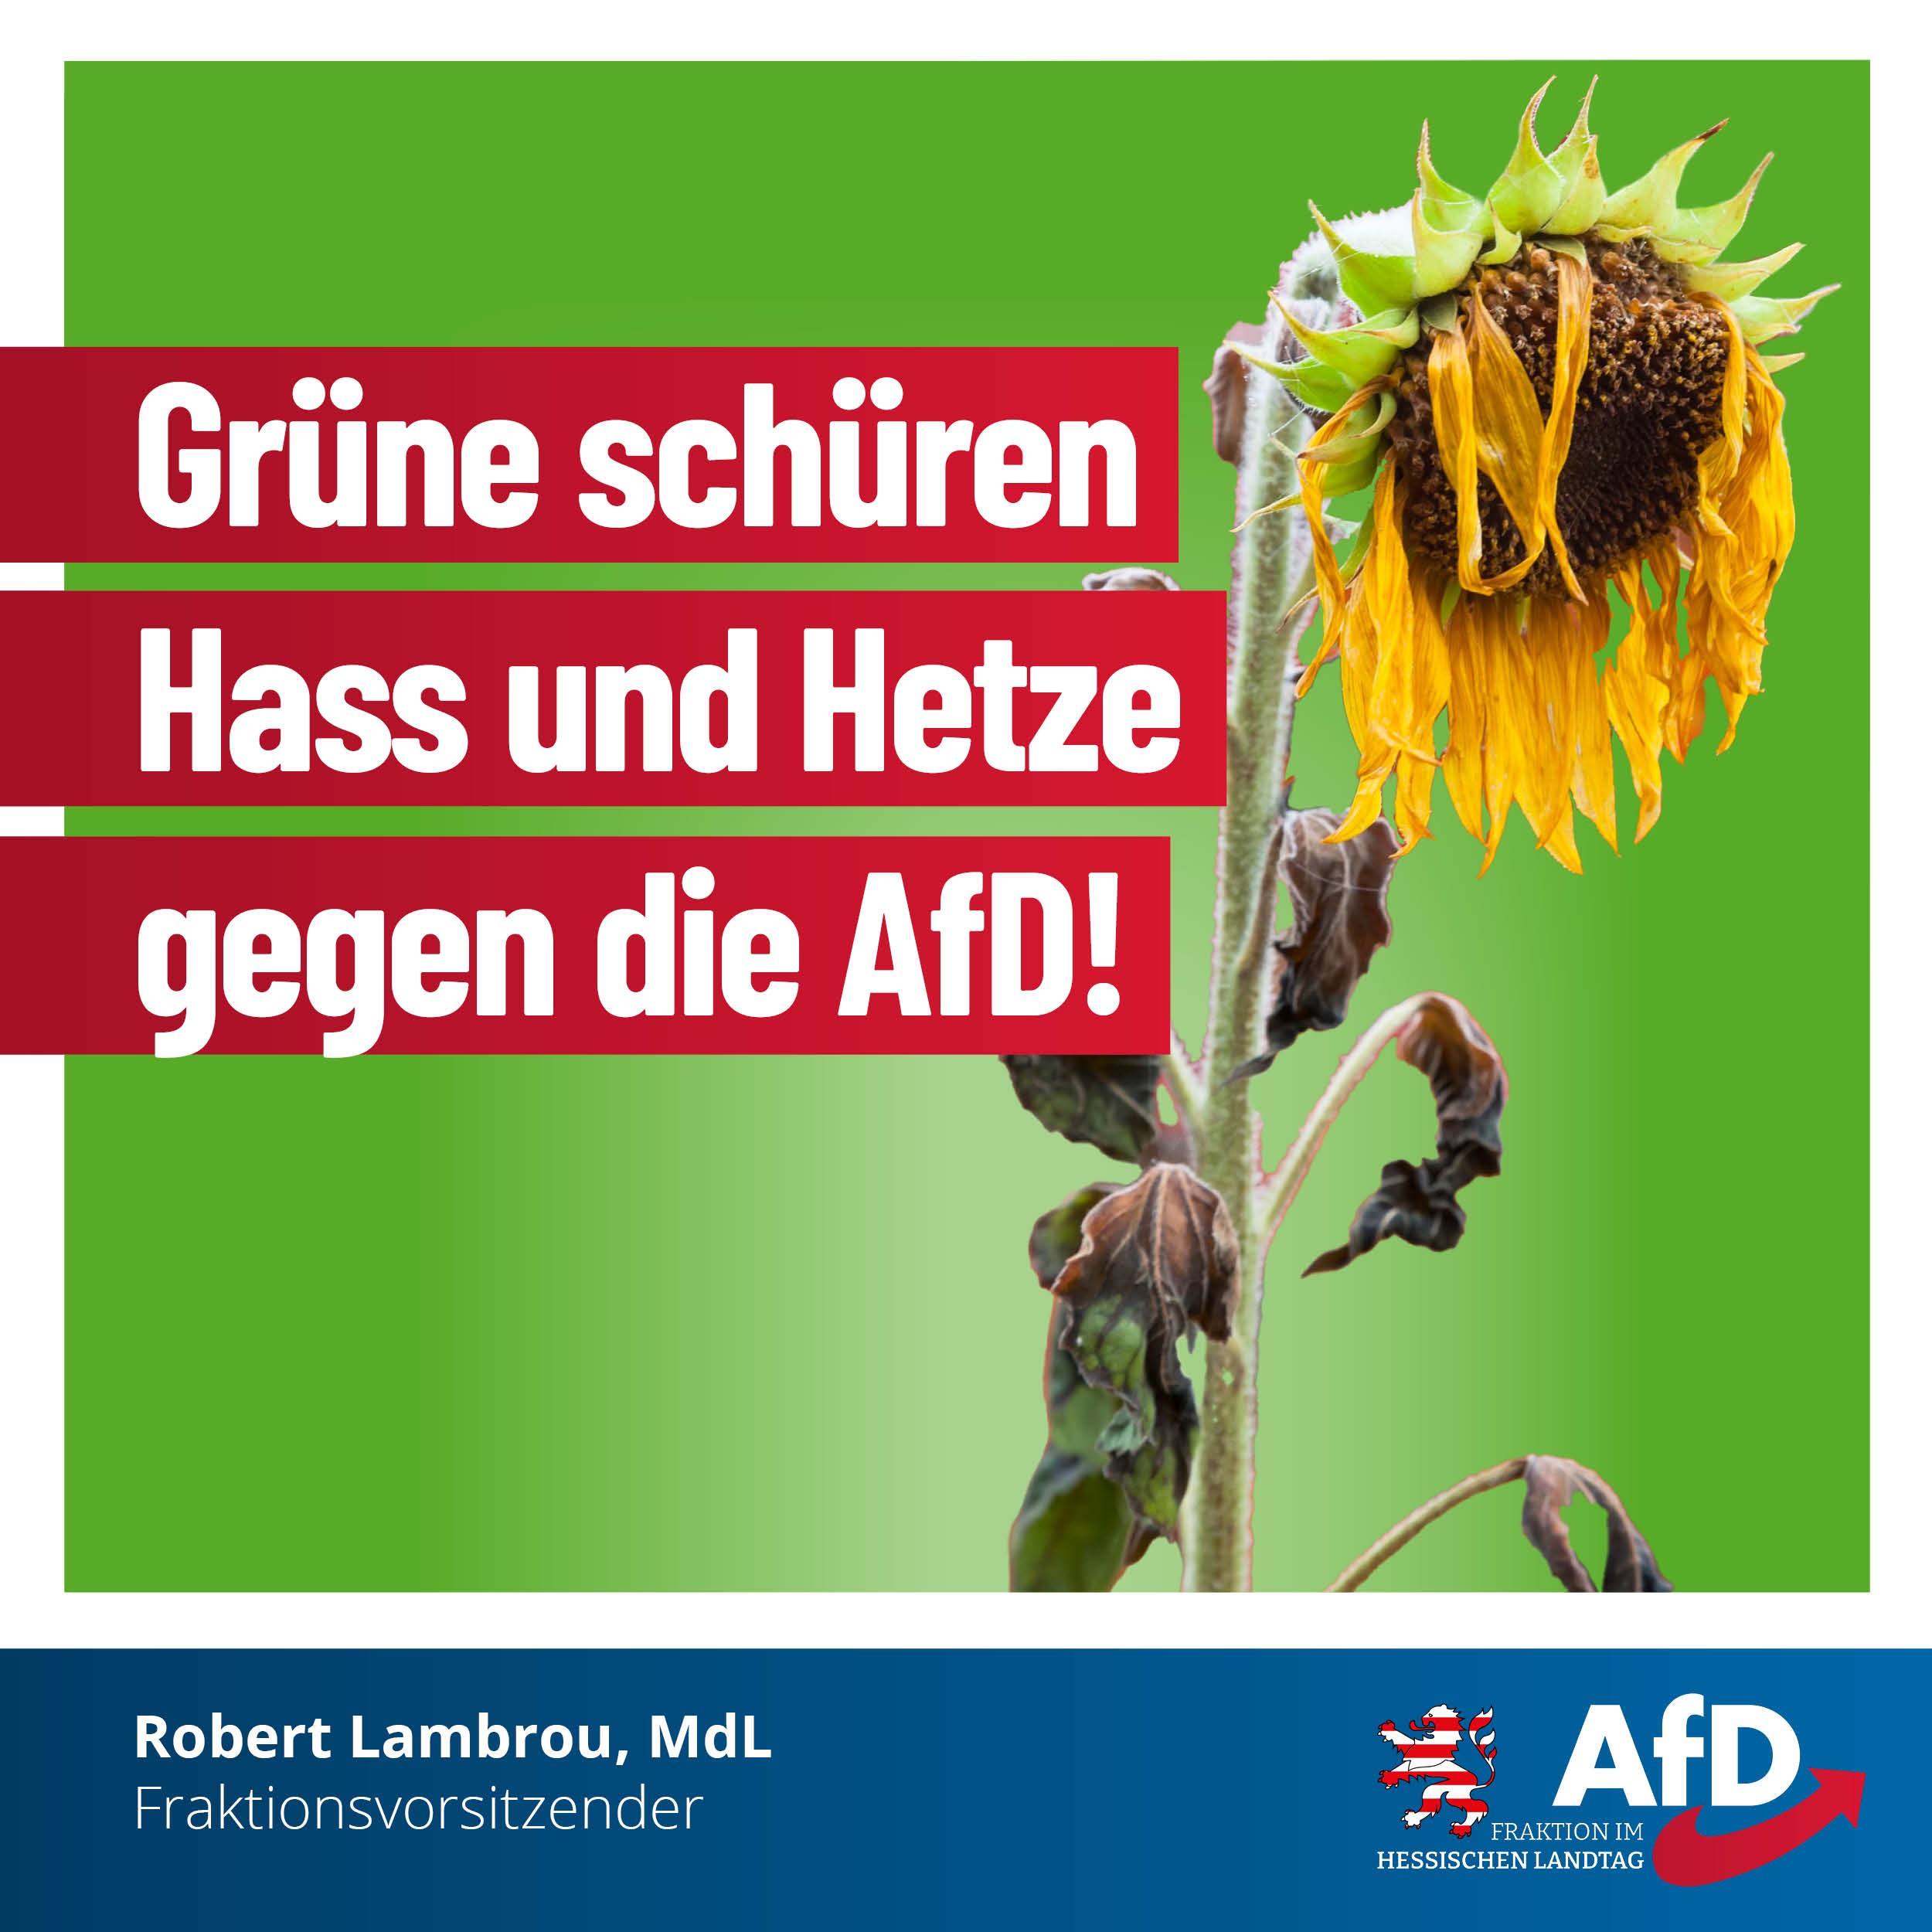 Read more about the article Grüne schüren Hass und Hetze gegen die AfD